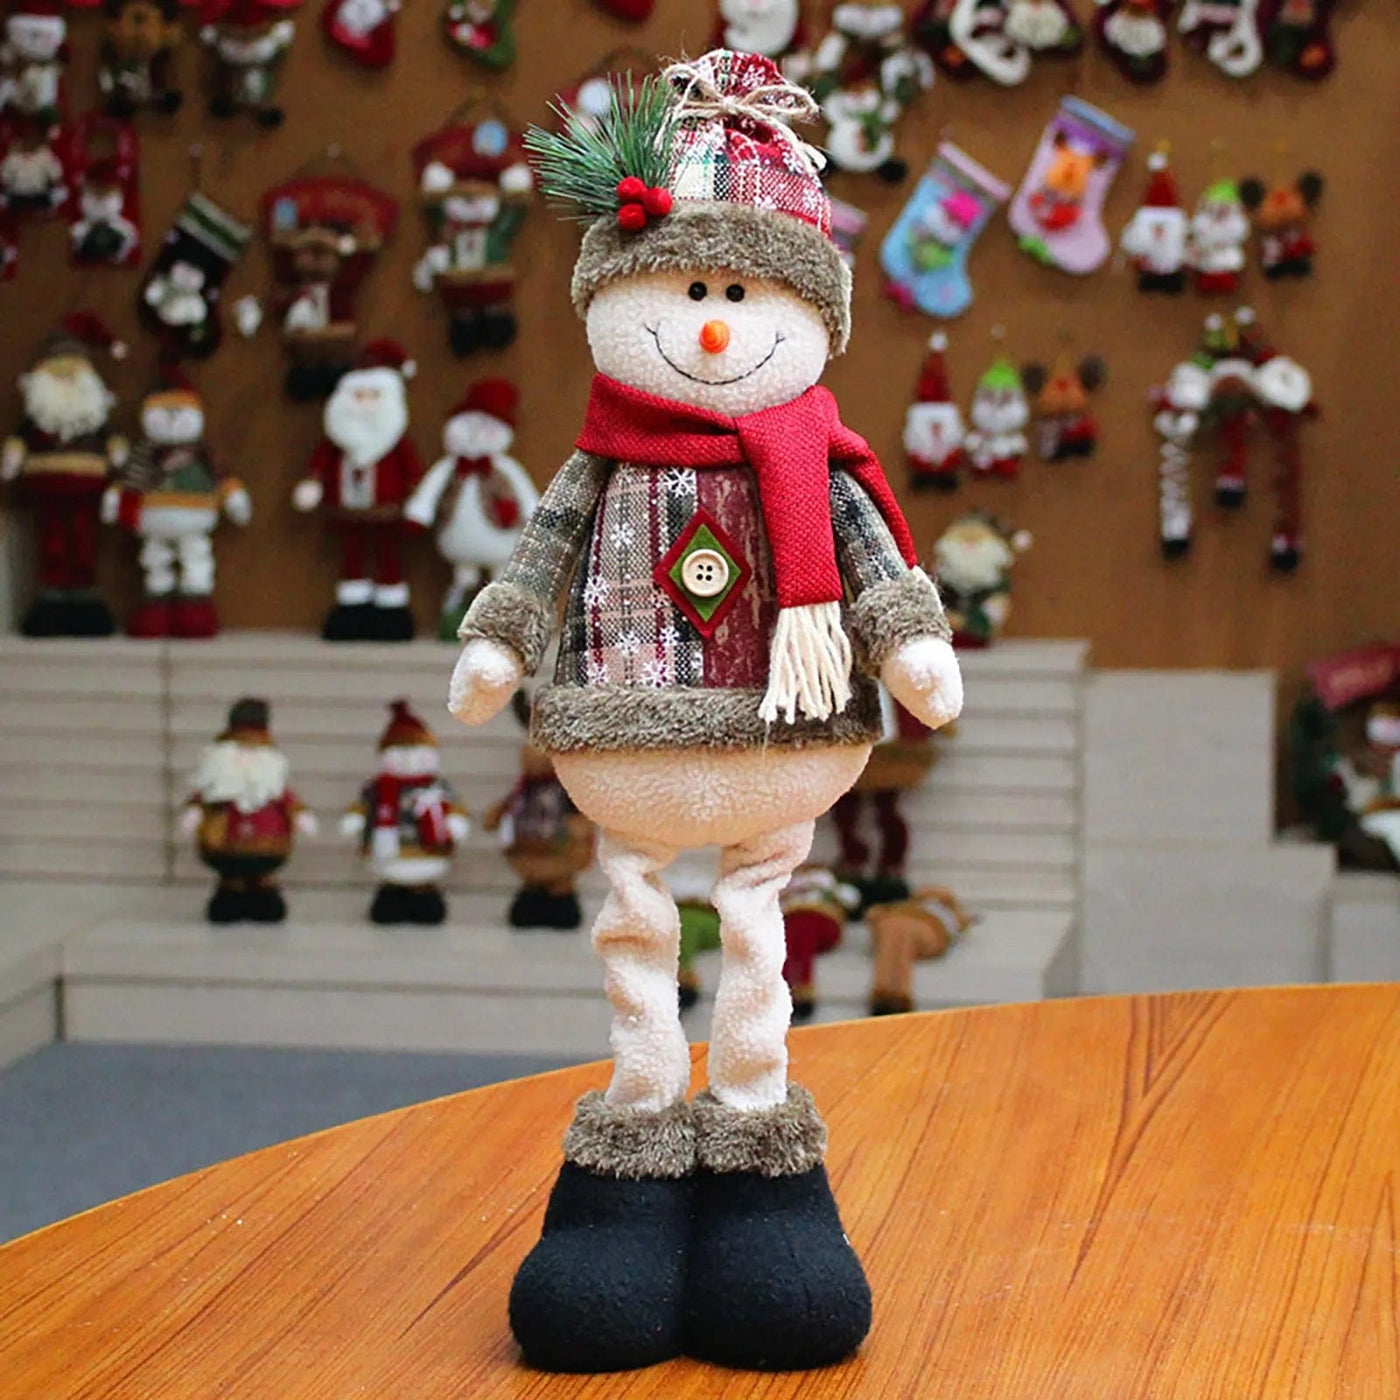 wickedafstore B Santa, Snowman, and Reindeer Figurines